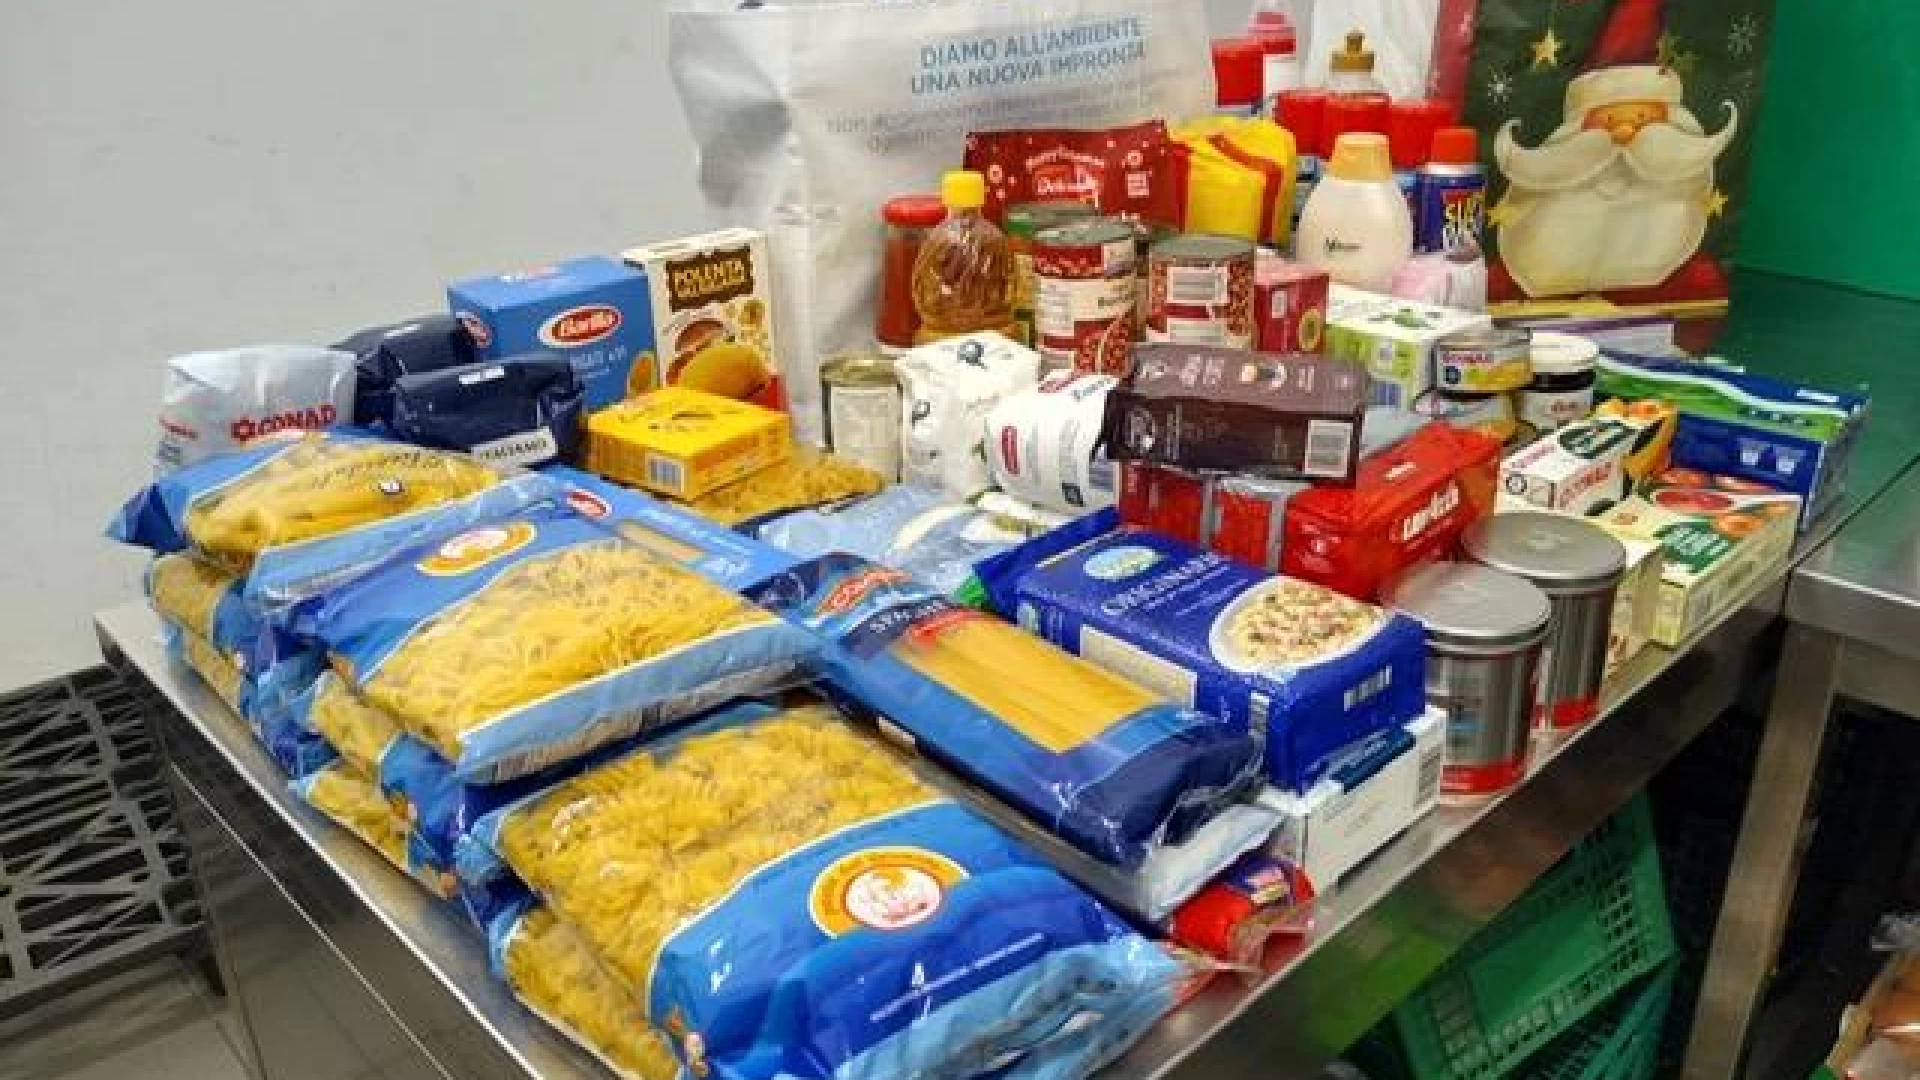 Campobasso: la Guardia di Finanza dona alle strutture caritatevoli cittadine oltre 1200 chilogrammi di generi alimentari.